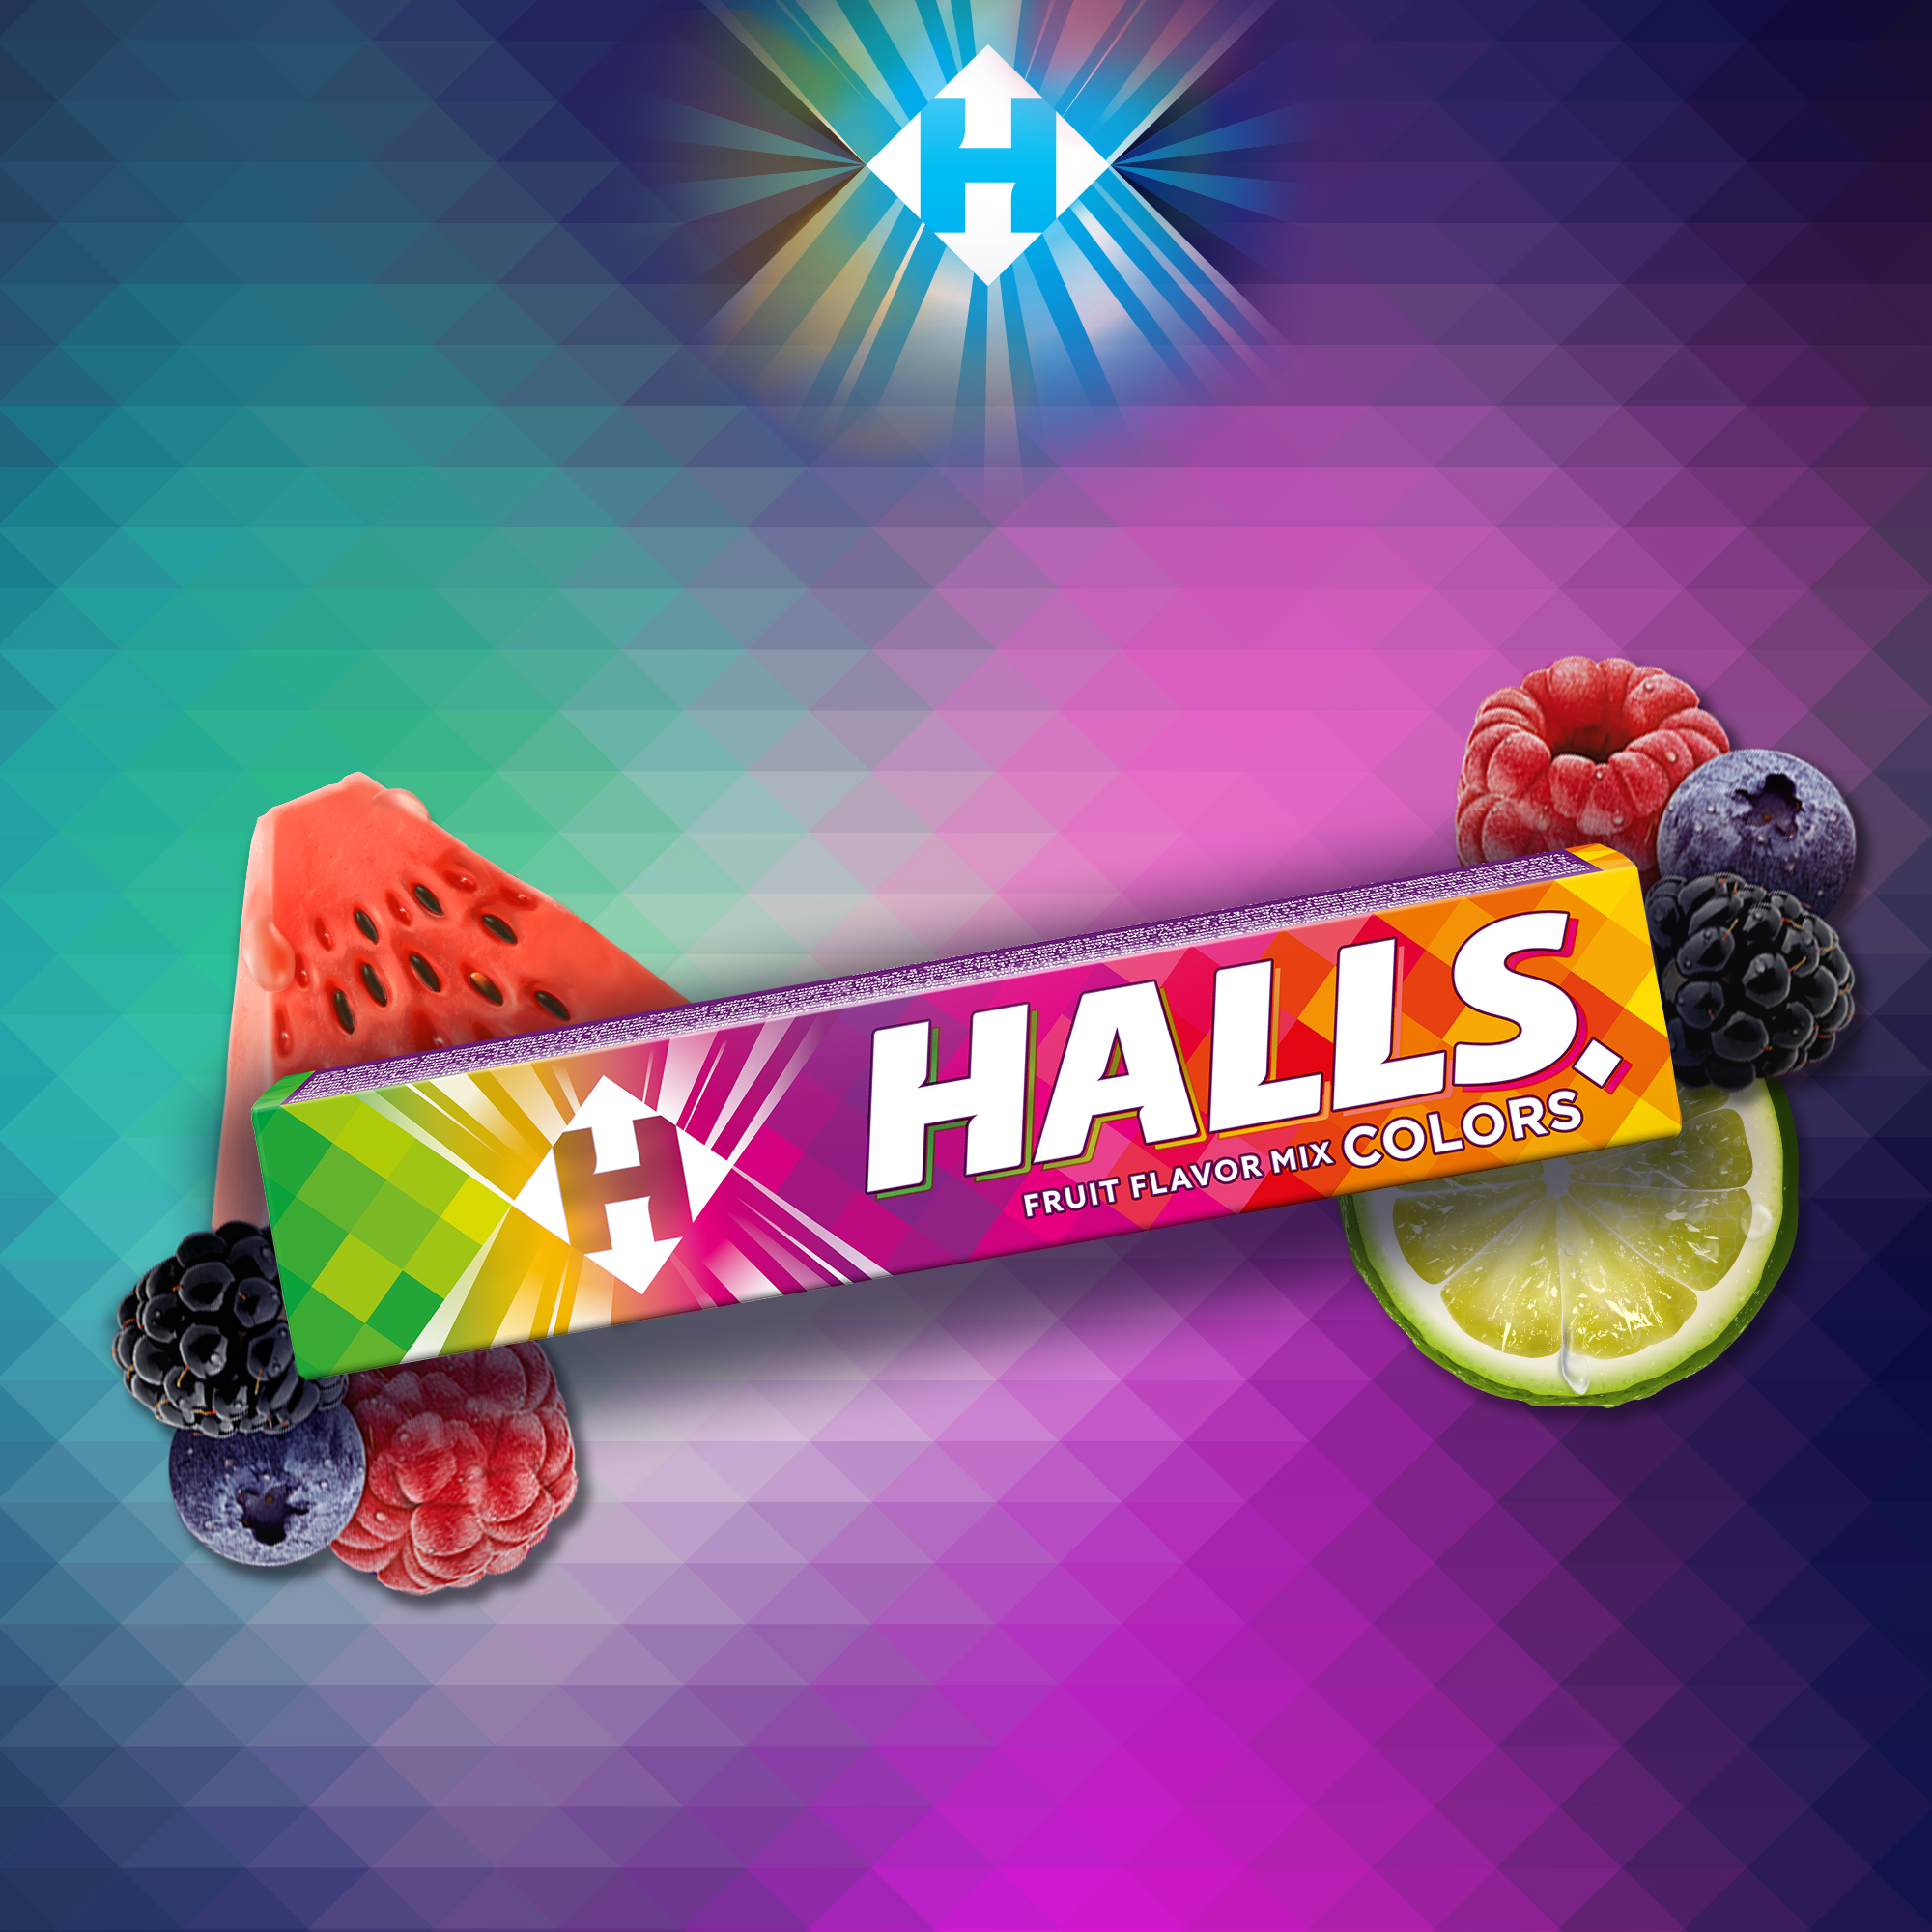 Halls_Colors_PL_SI01